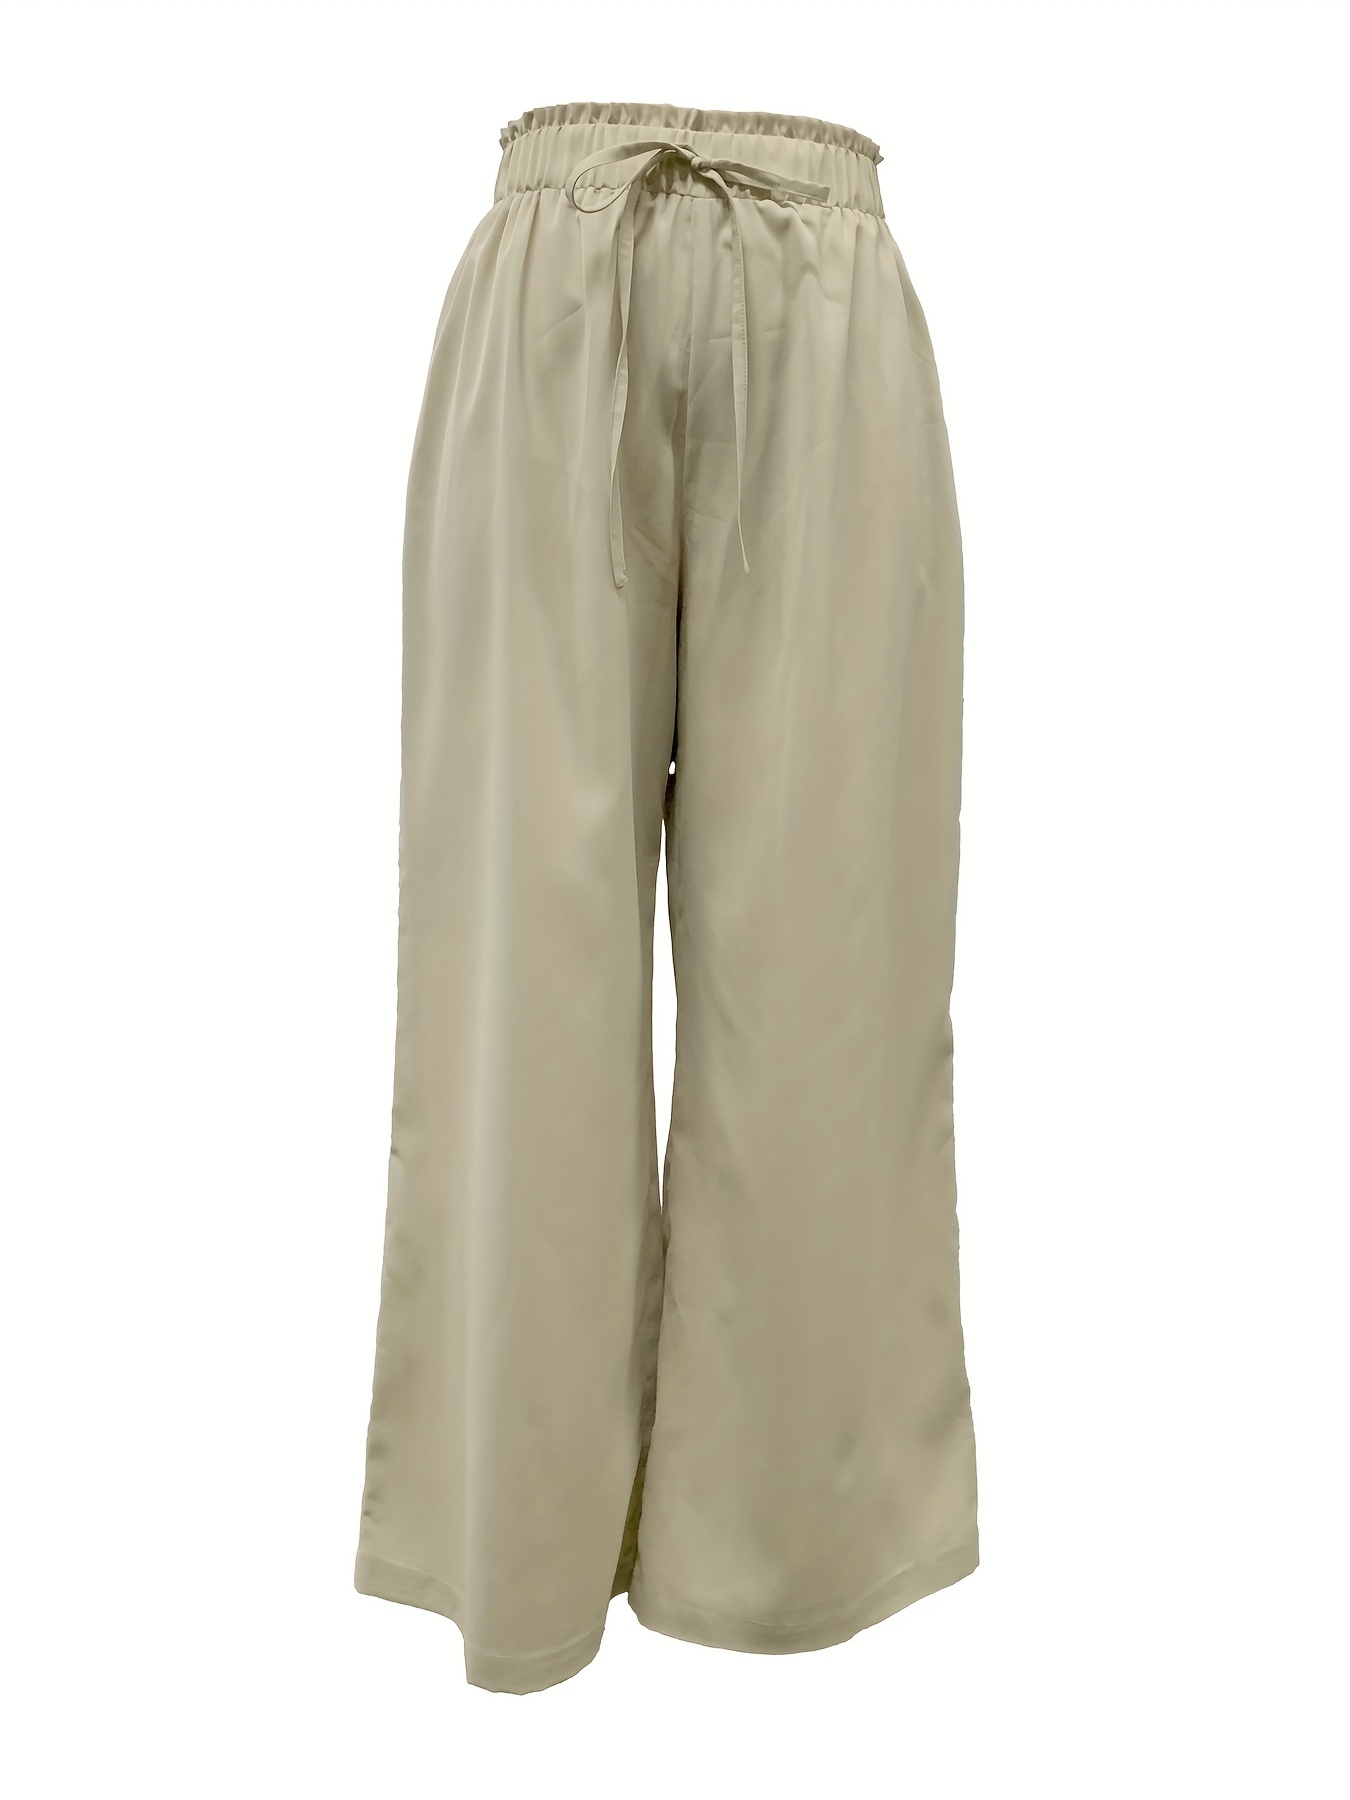 Pantalones Anchos Con Cordón Sólido, Pantalones Sueltos Casuales Para  Primavera Y Otoño, Ropa De Mujer